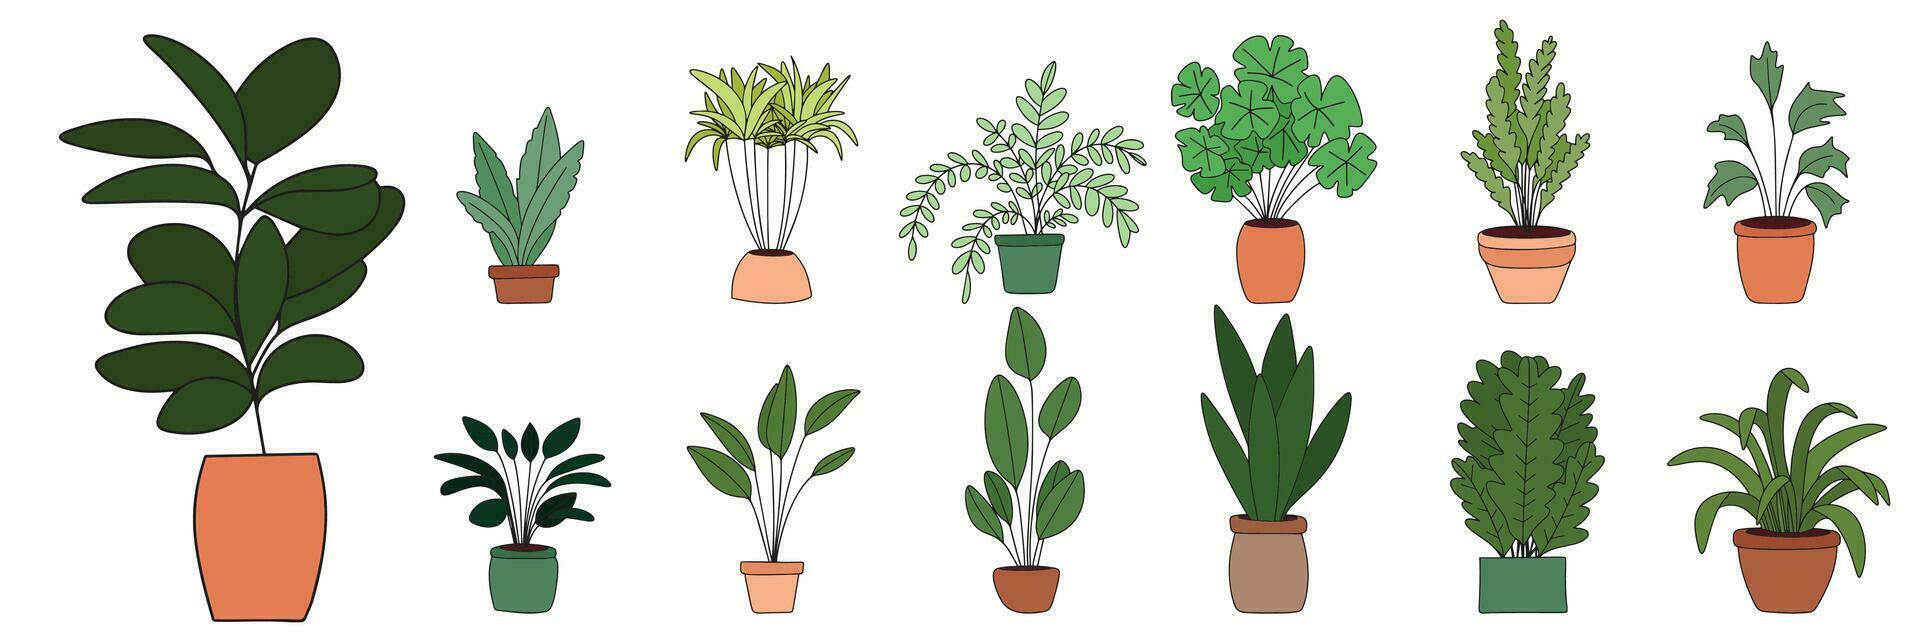 conjunto de plantas de interior de colores describir. mano dibujado planta de casa. vector ilustración.